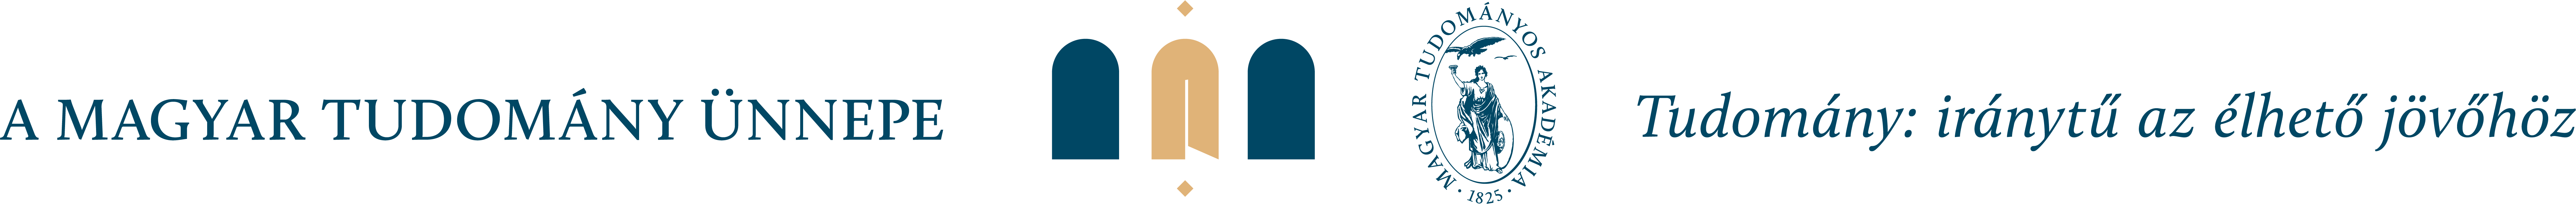 MTU_logo_motto_2021_vektor-02.png